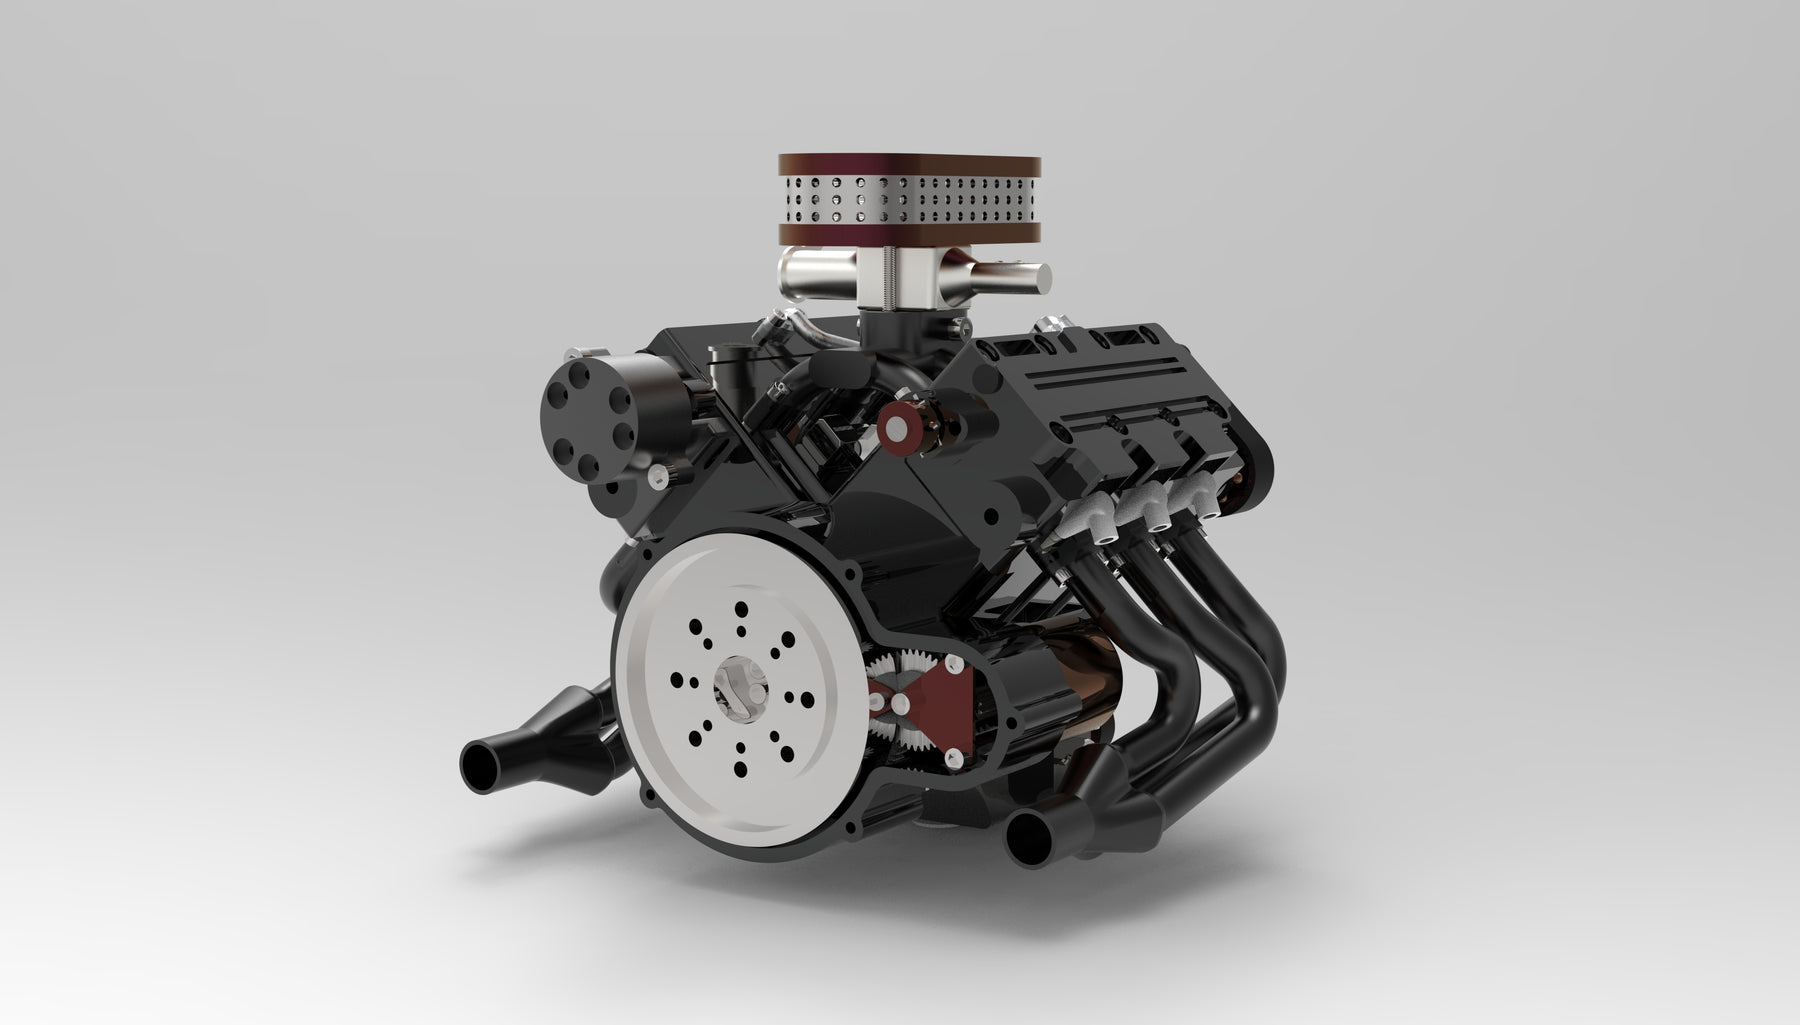 ENJOMOR GS-V6 22CC SOHC Four-stroke V-shaped six-cylinder Water-cooled Electric Gasoline Internal Combustion Engine Model